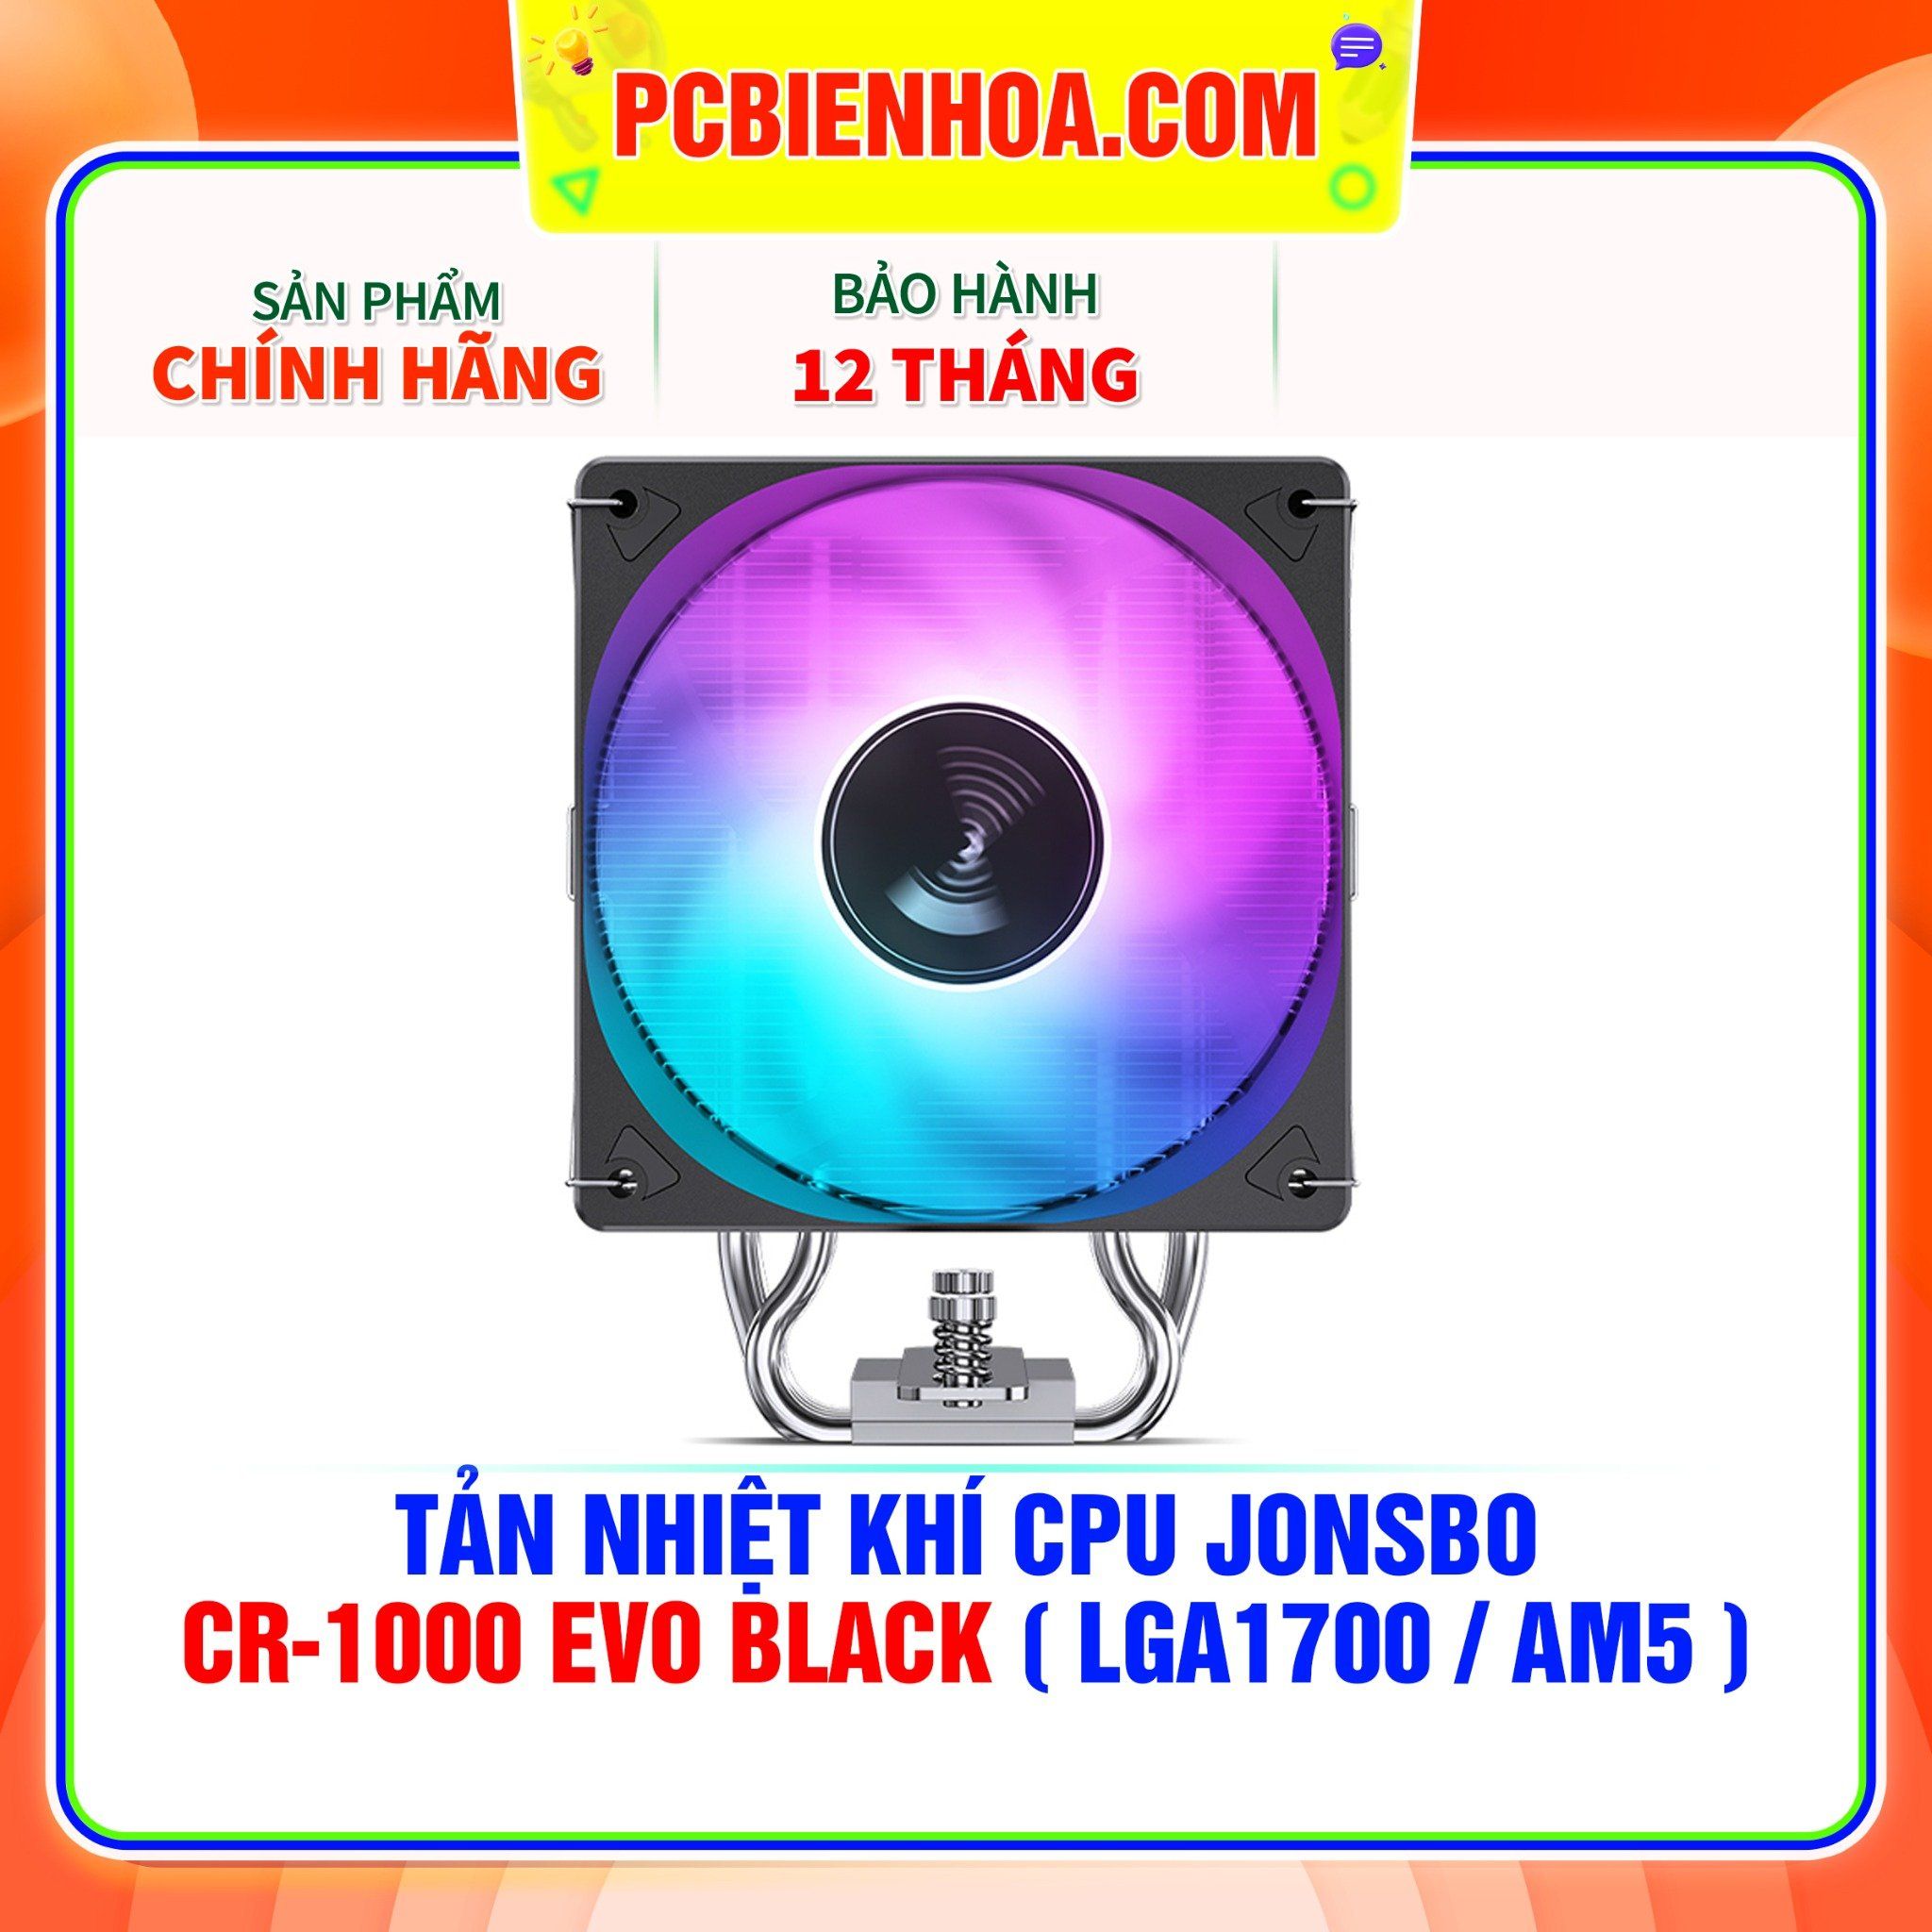  TẢN NHIỆT KHÍ CPU JONSBO CR-1000 EVO BLACK ( HỖ TRỢ SOCKET LGA1700 / AM5 ) 